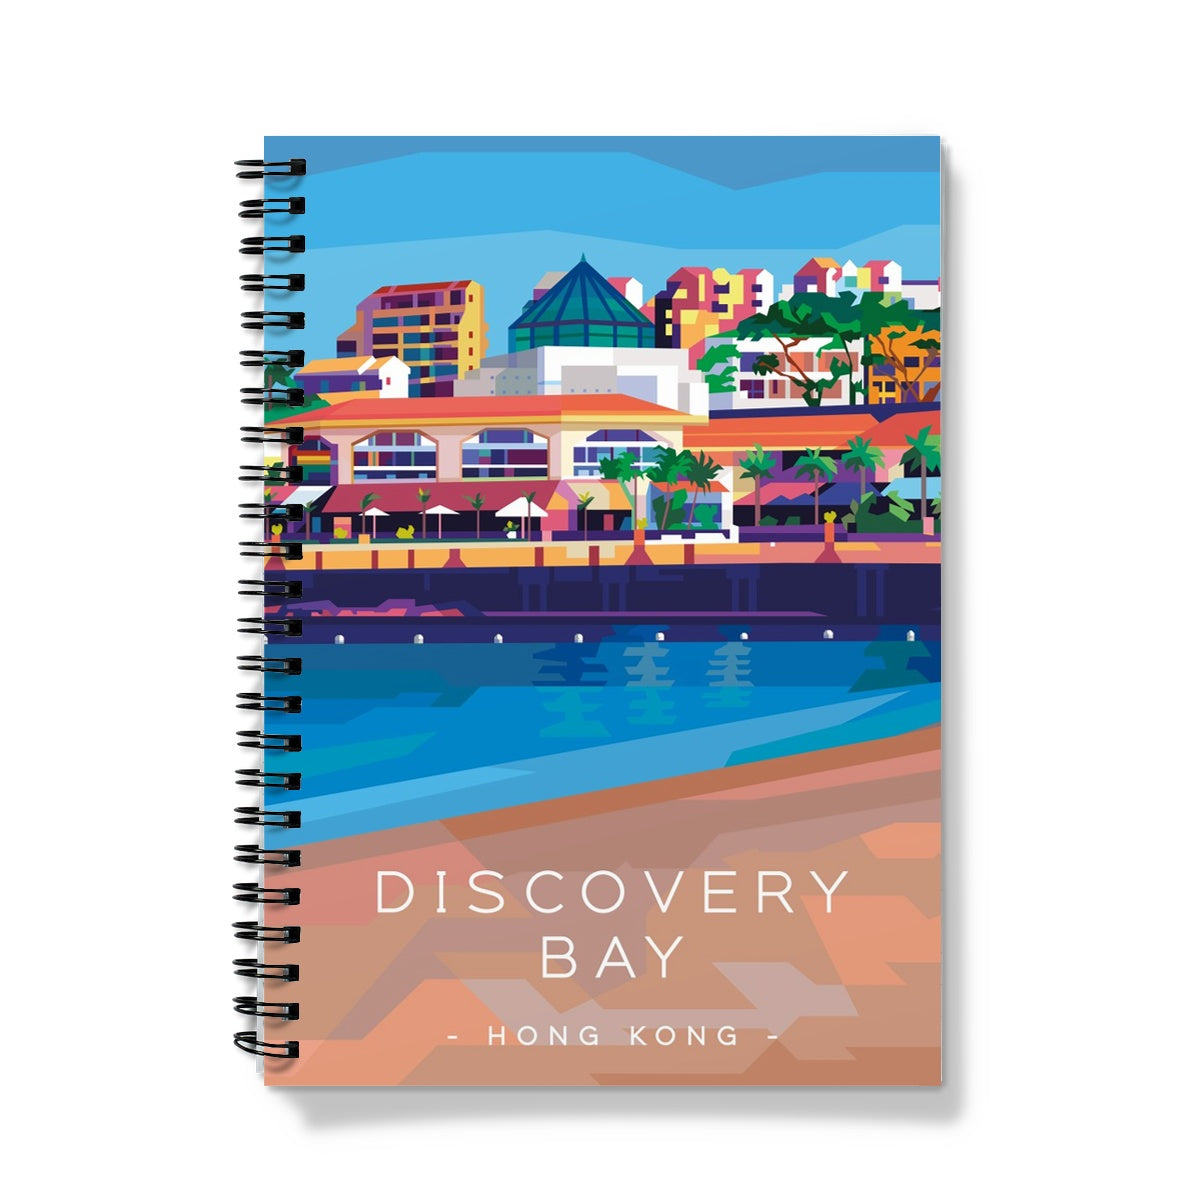 Hong Kong Travel - Discovery Bay Notebook